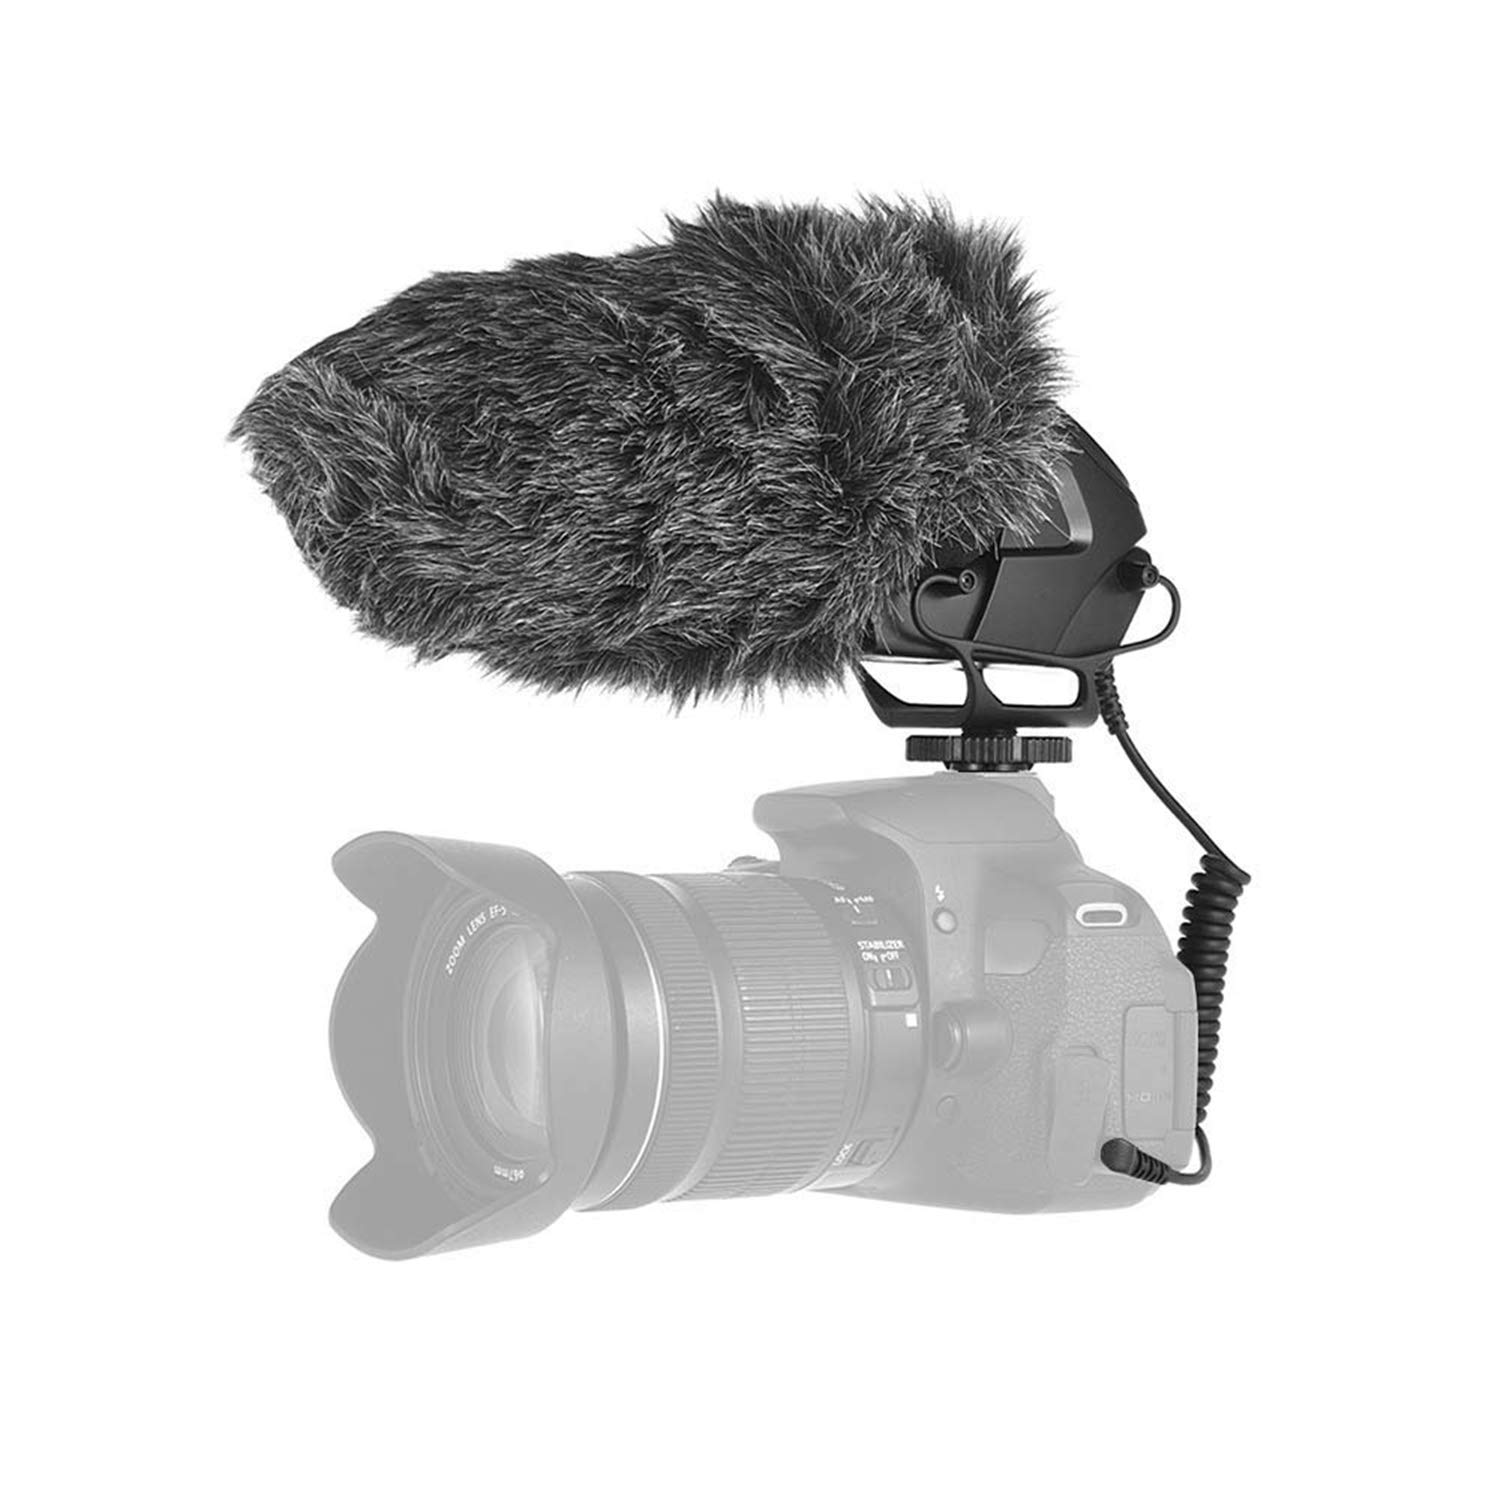 [下殺5折] BOYA BY-BM3030 專業級相機機頂麥克 超心型指向 電容式麥克風 採訪/錄影/直播 適用相機 電腦 攝影機